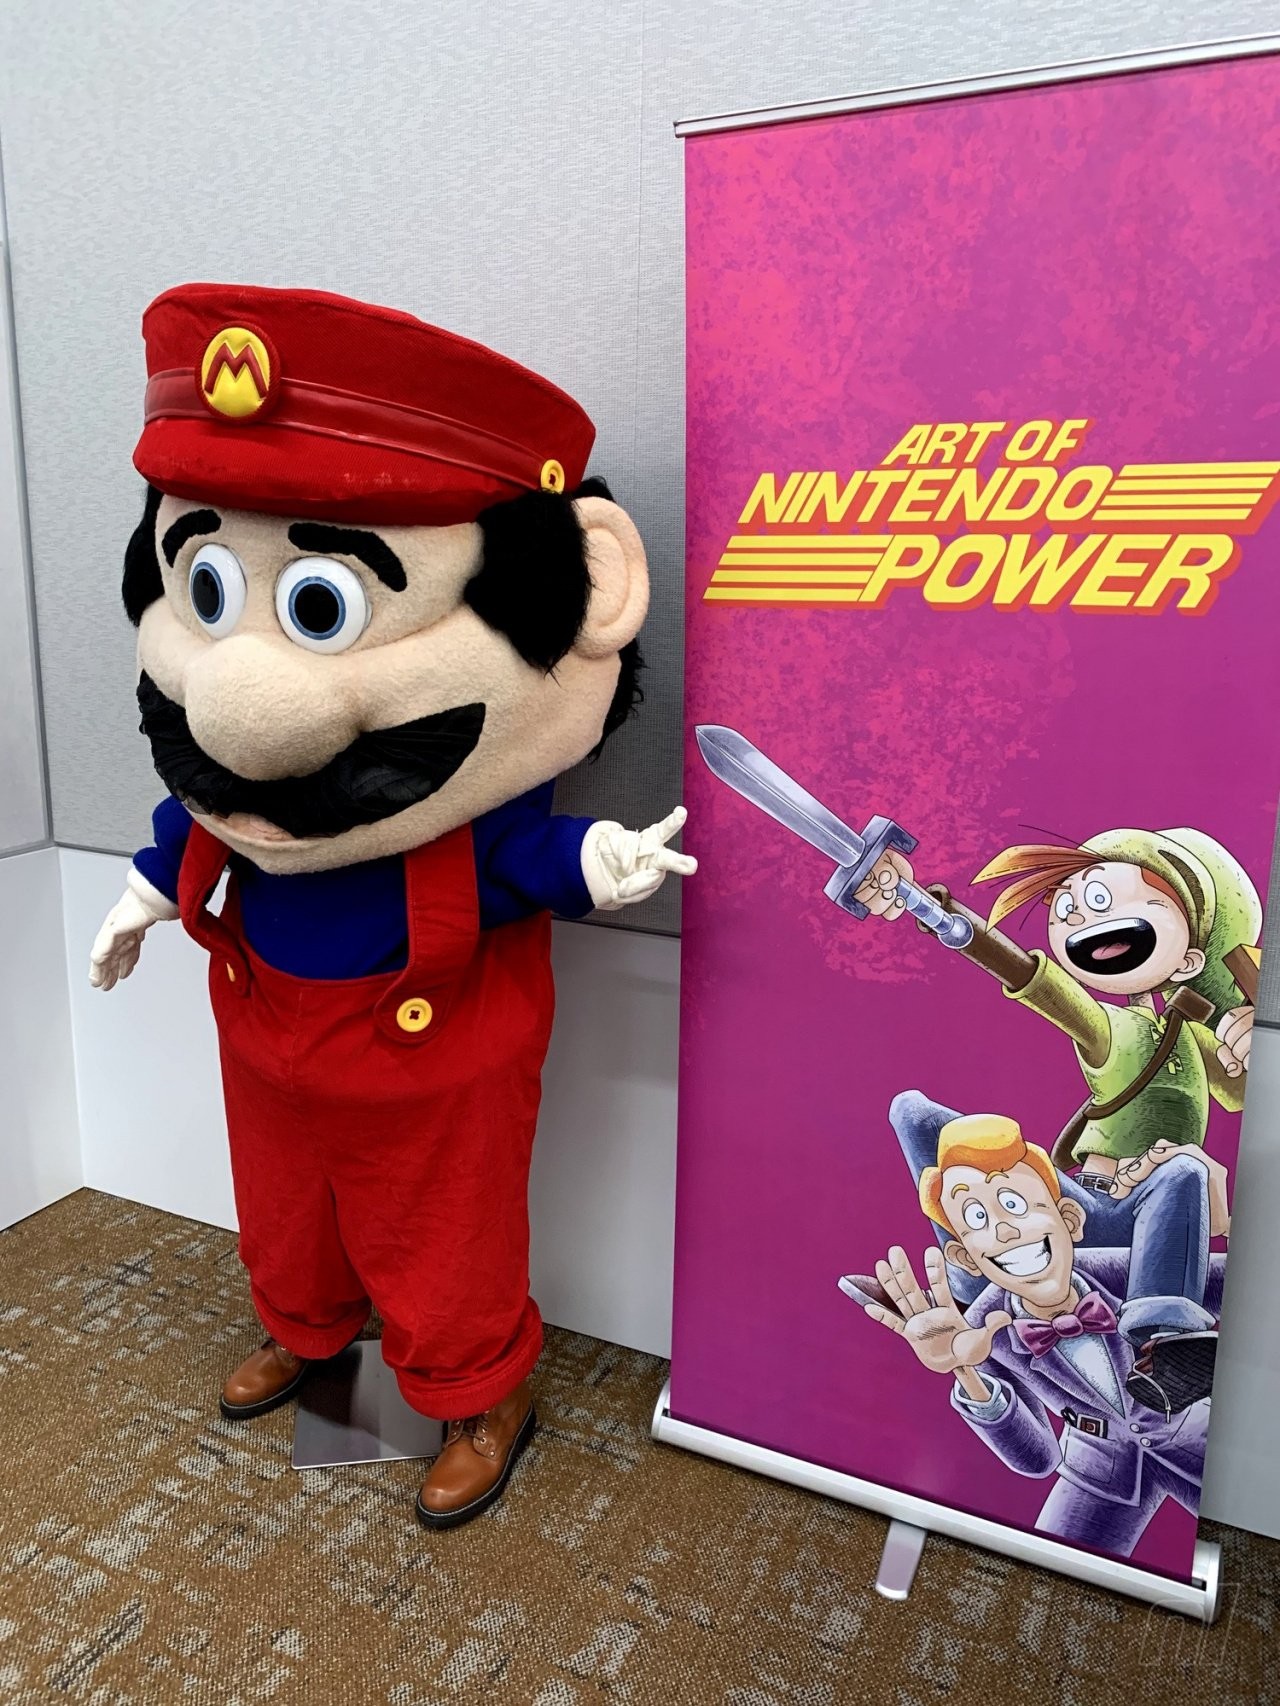 The original Mario Mascot costume